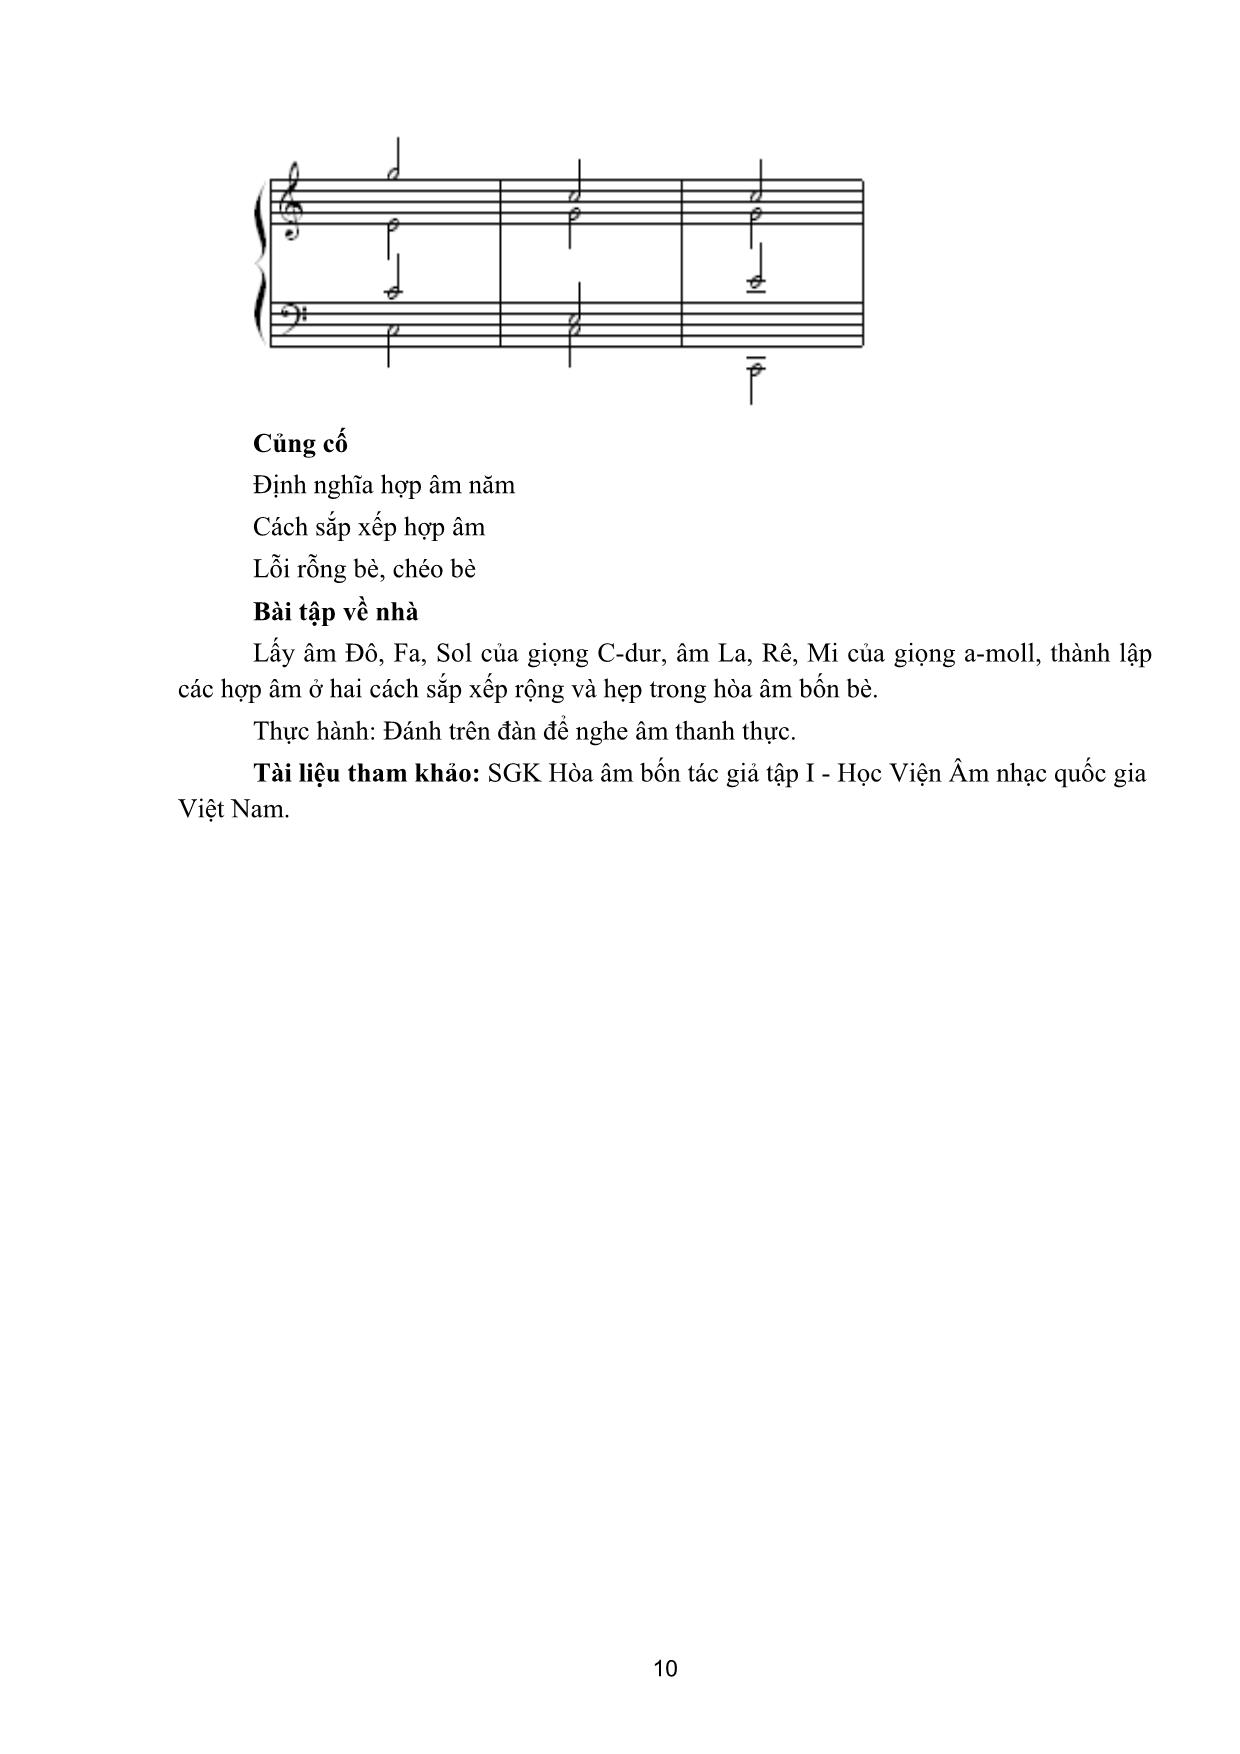 Giáo trình Thanh nhạc, organ, biểu diễn nhạc cụ truyền thống - Hòa thanh trang 10